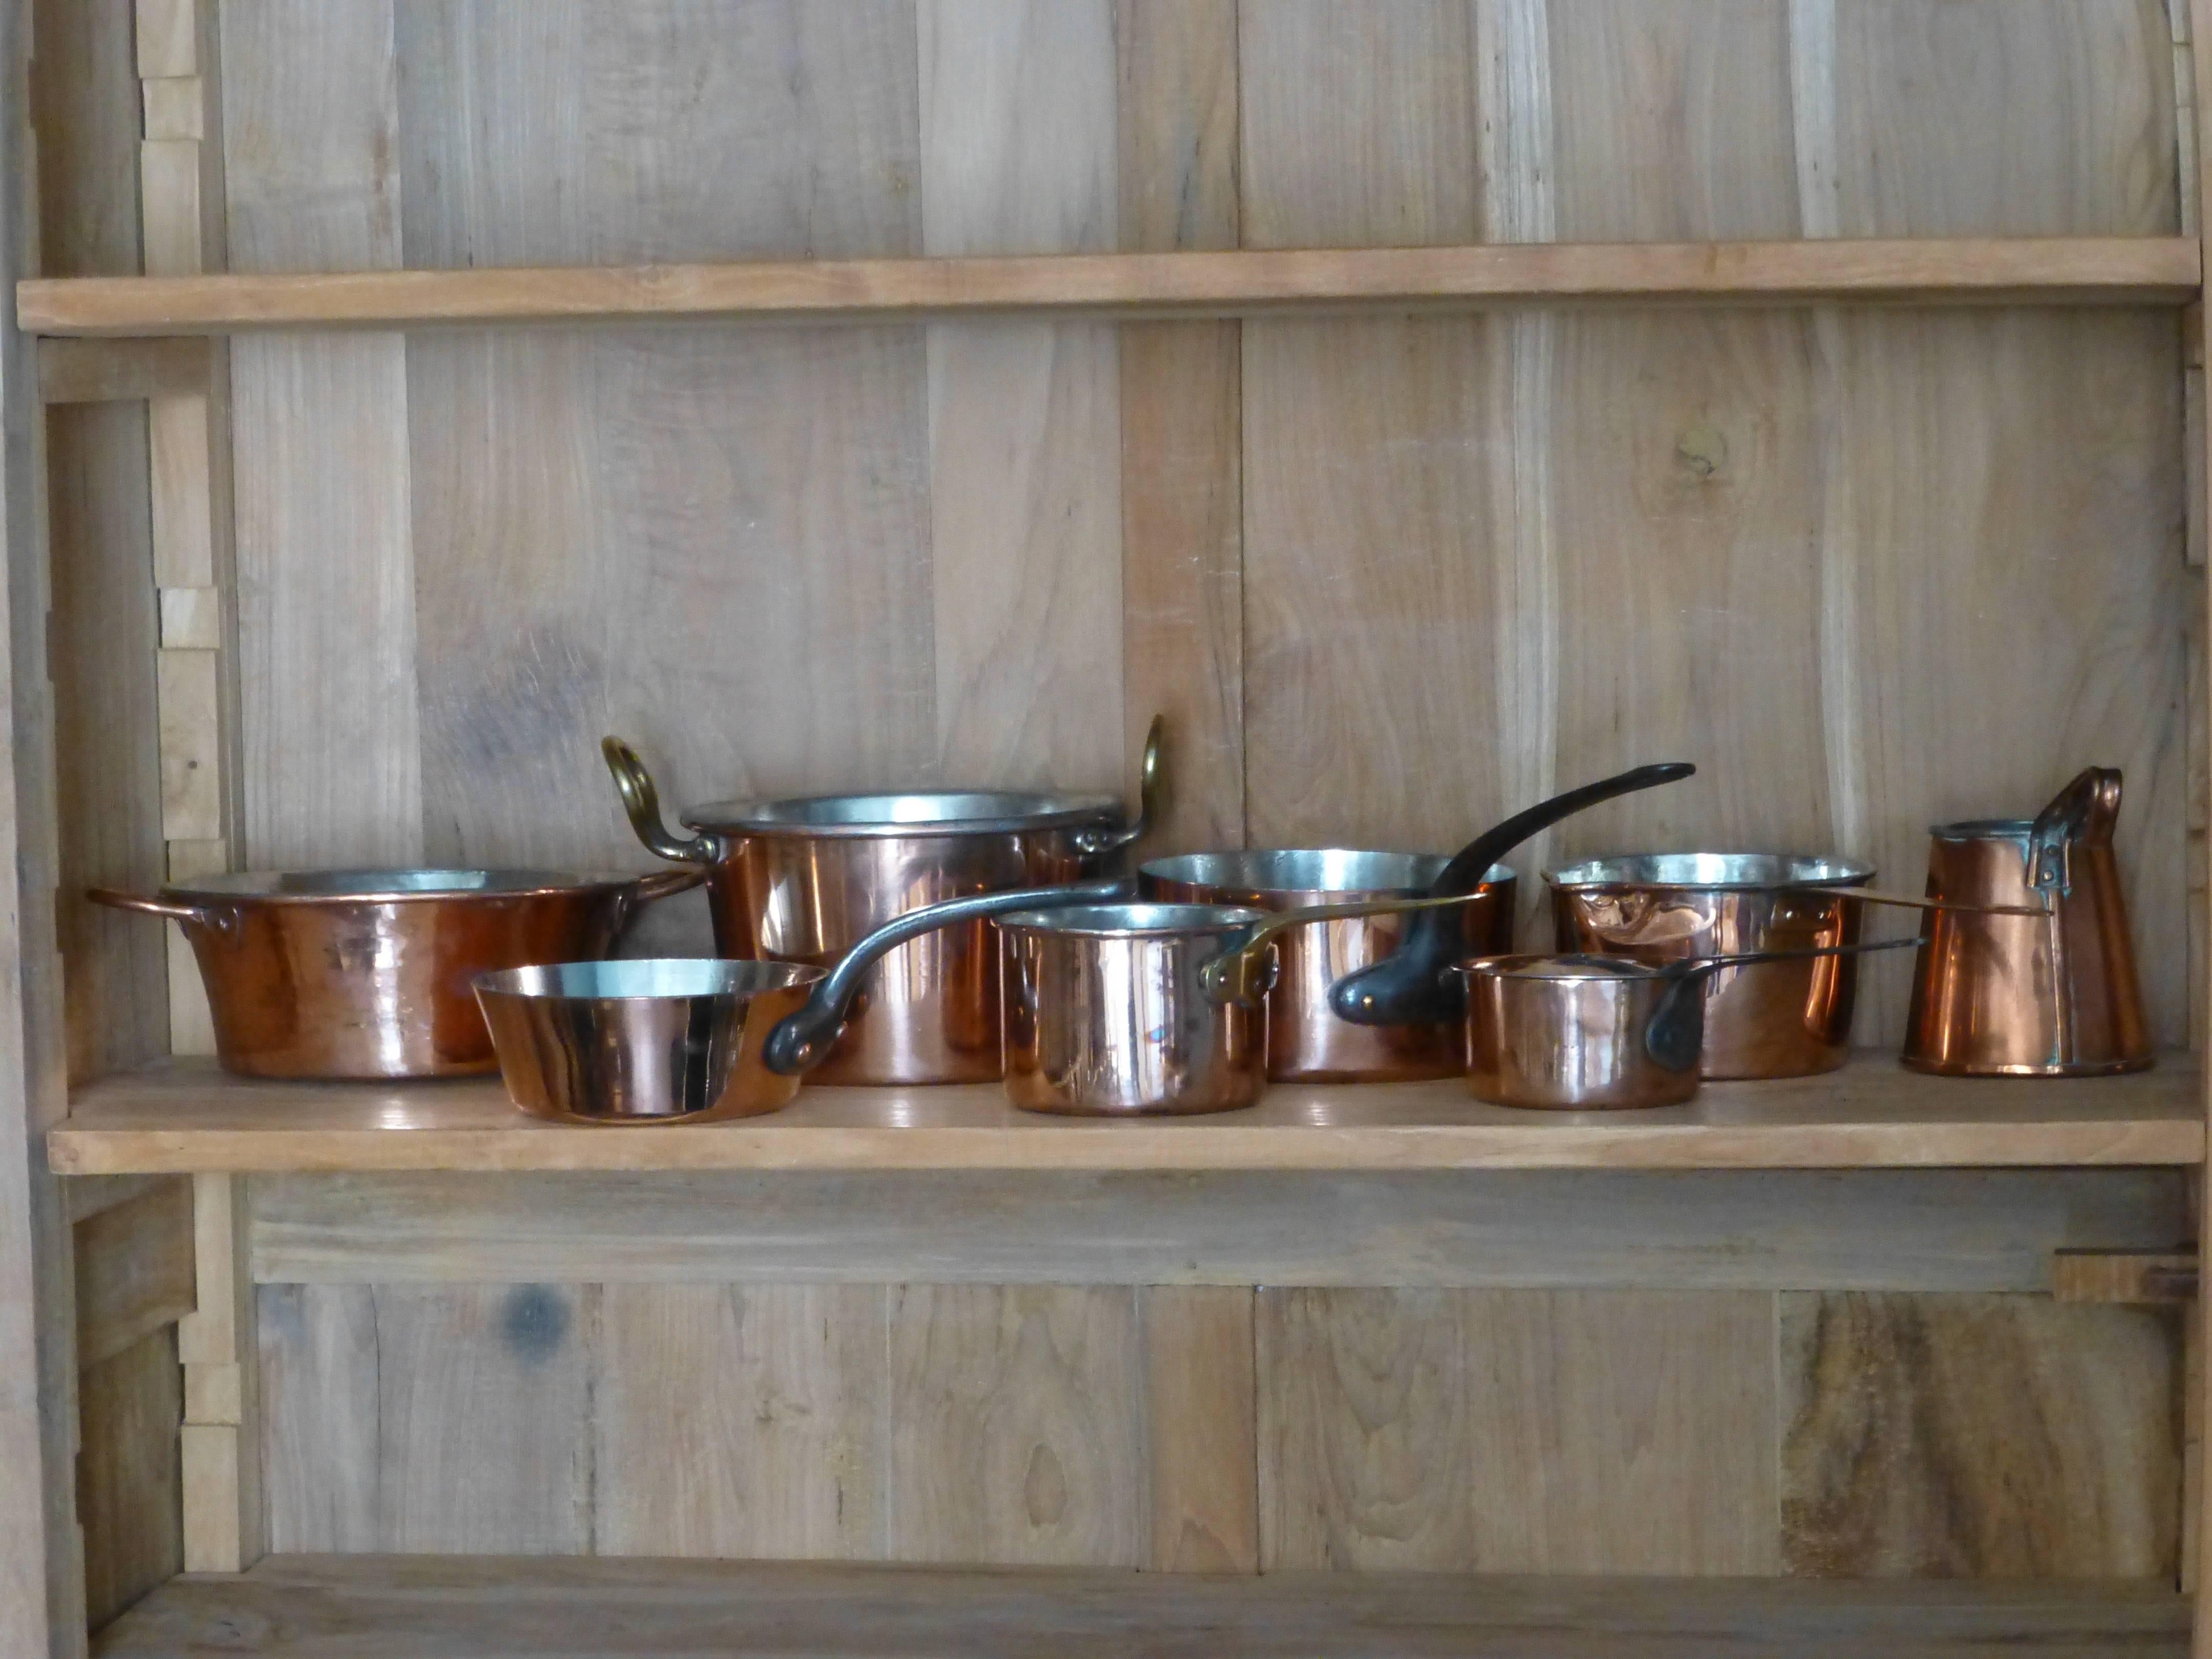 19th Century Small Batterie De La Cuisine of Re-Tinned Copper Pans and Pots